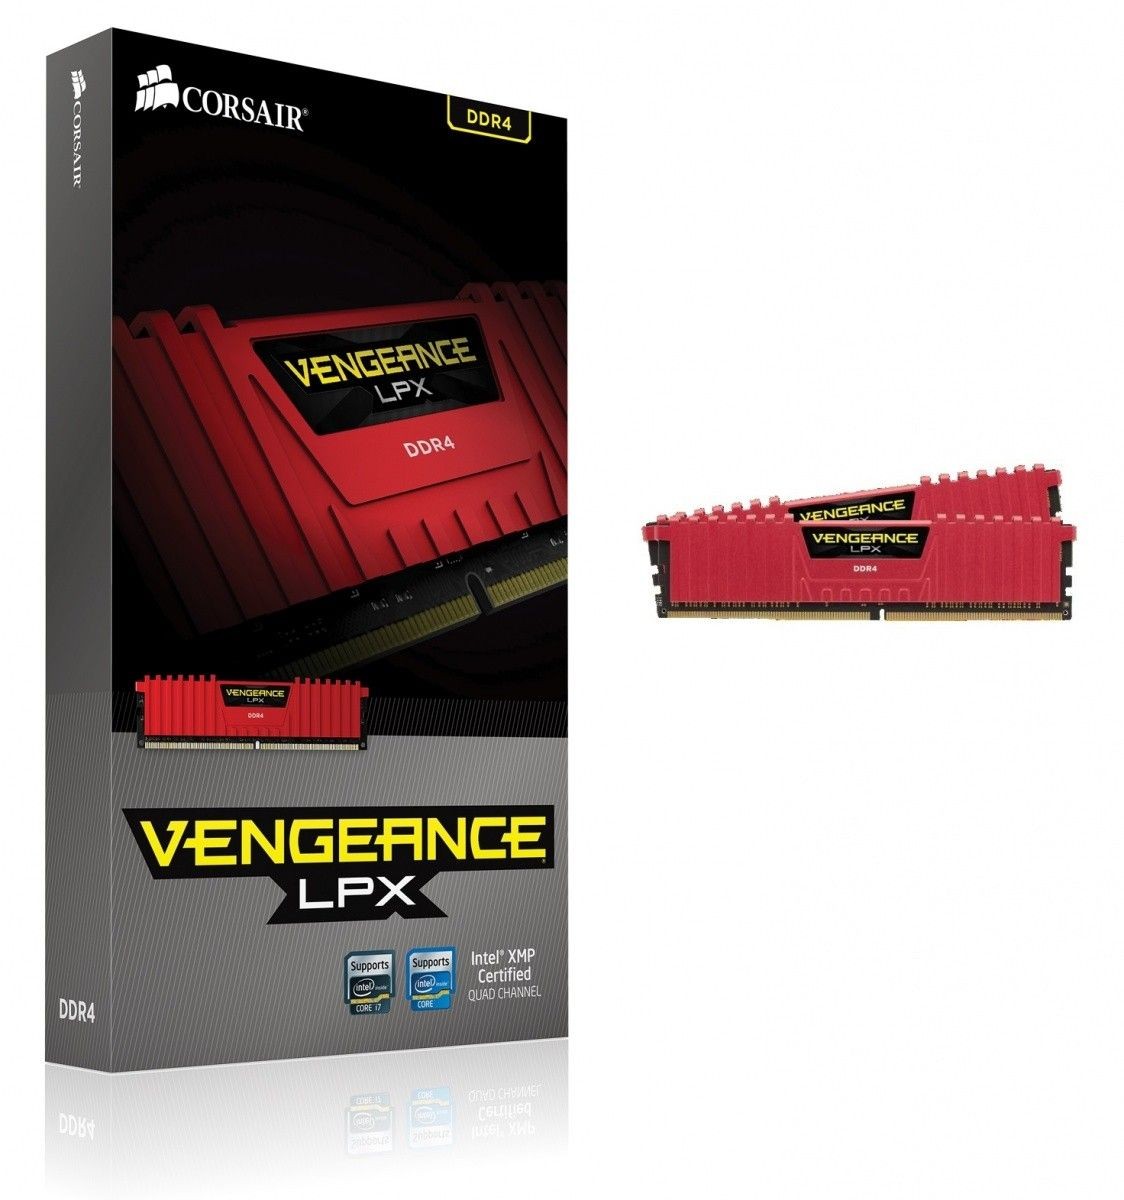 Corsair Pamięć DDR4 Vengeance LPX 16GB (2x8GB) 2133MHz CL13 1,2V Red